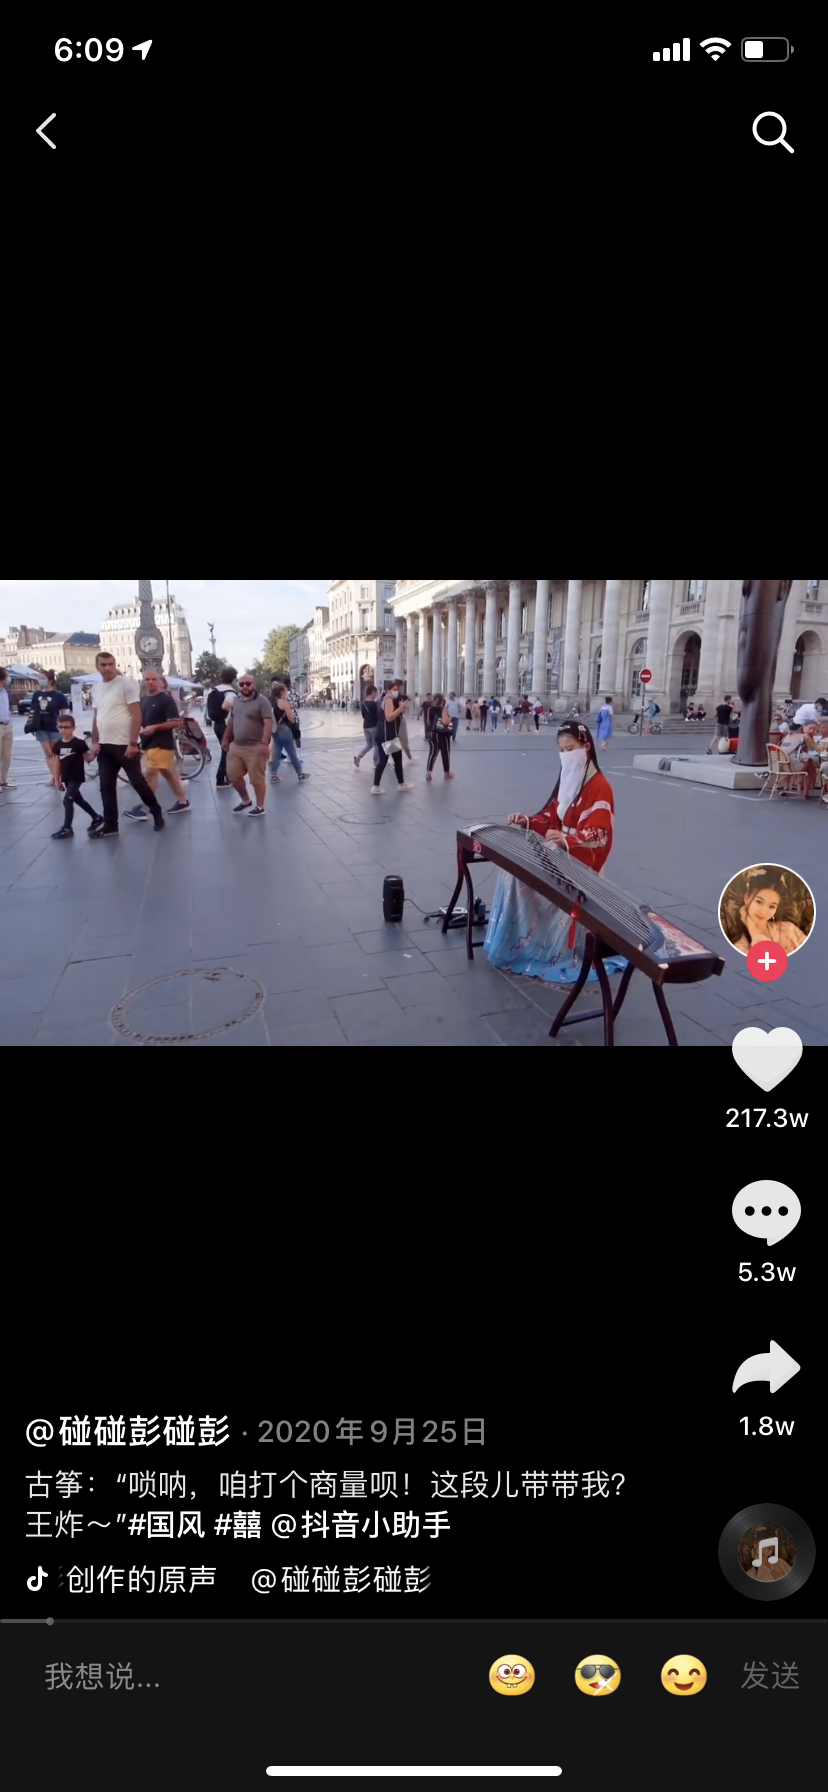 彭静旋在抖音@碰碰彭碰彭 778万粉丝,记录在法国街头中西音乐演奏